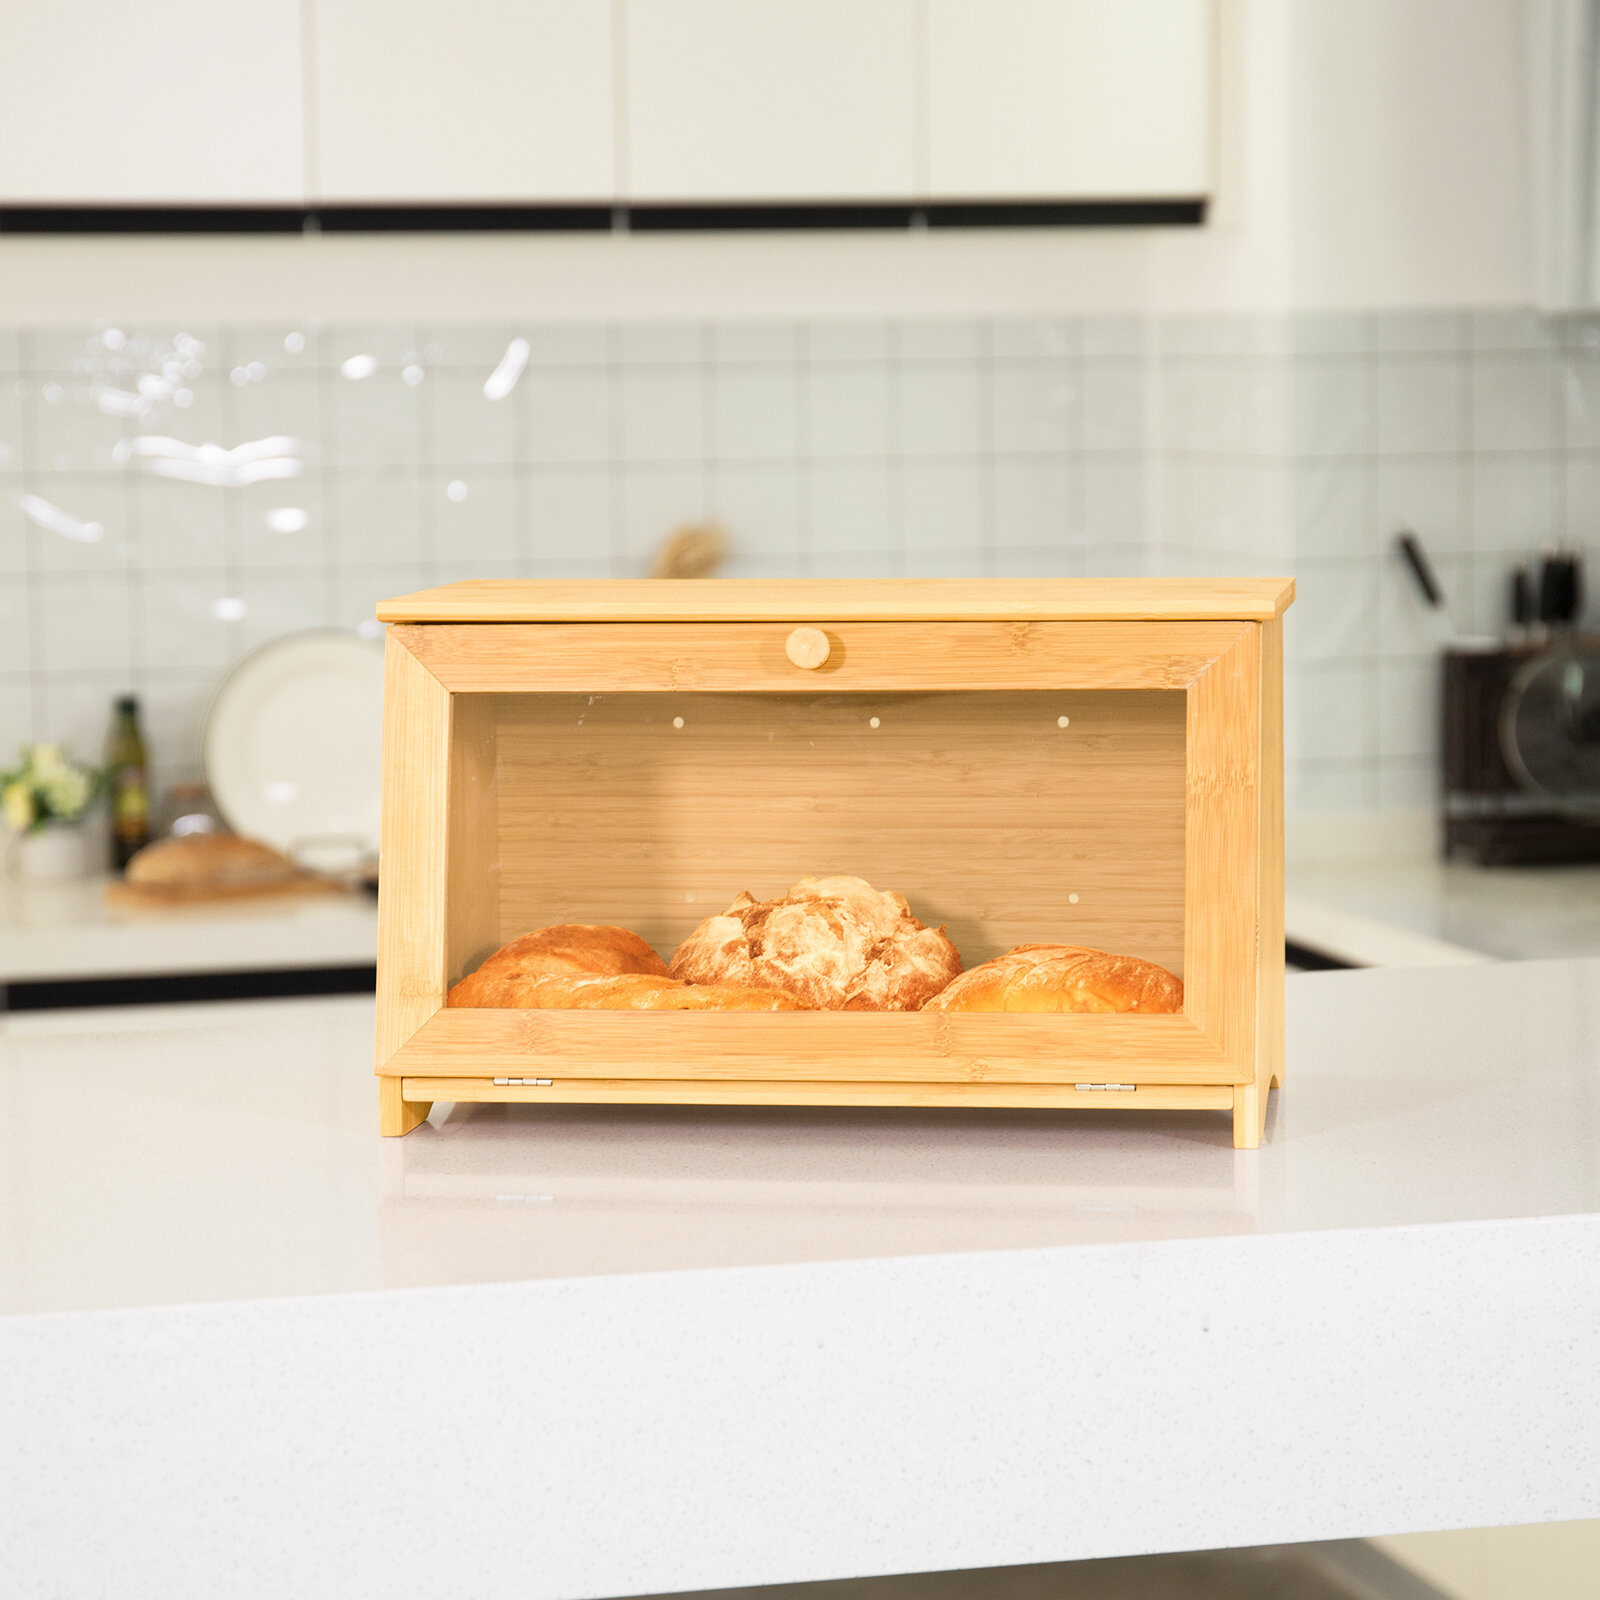 Kitchen Accessory: The Breadbox